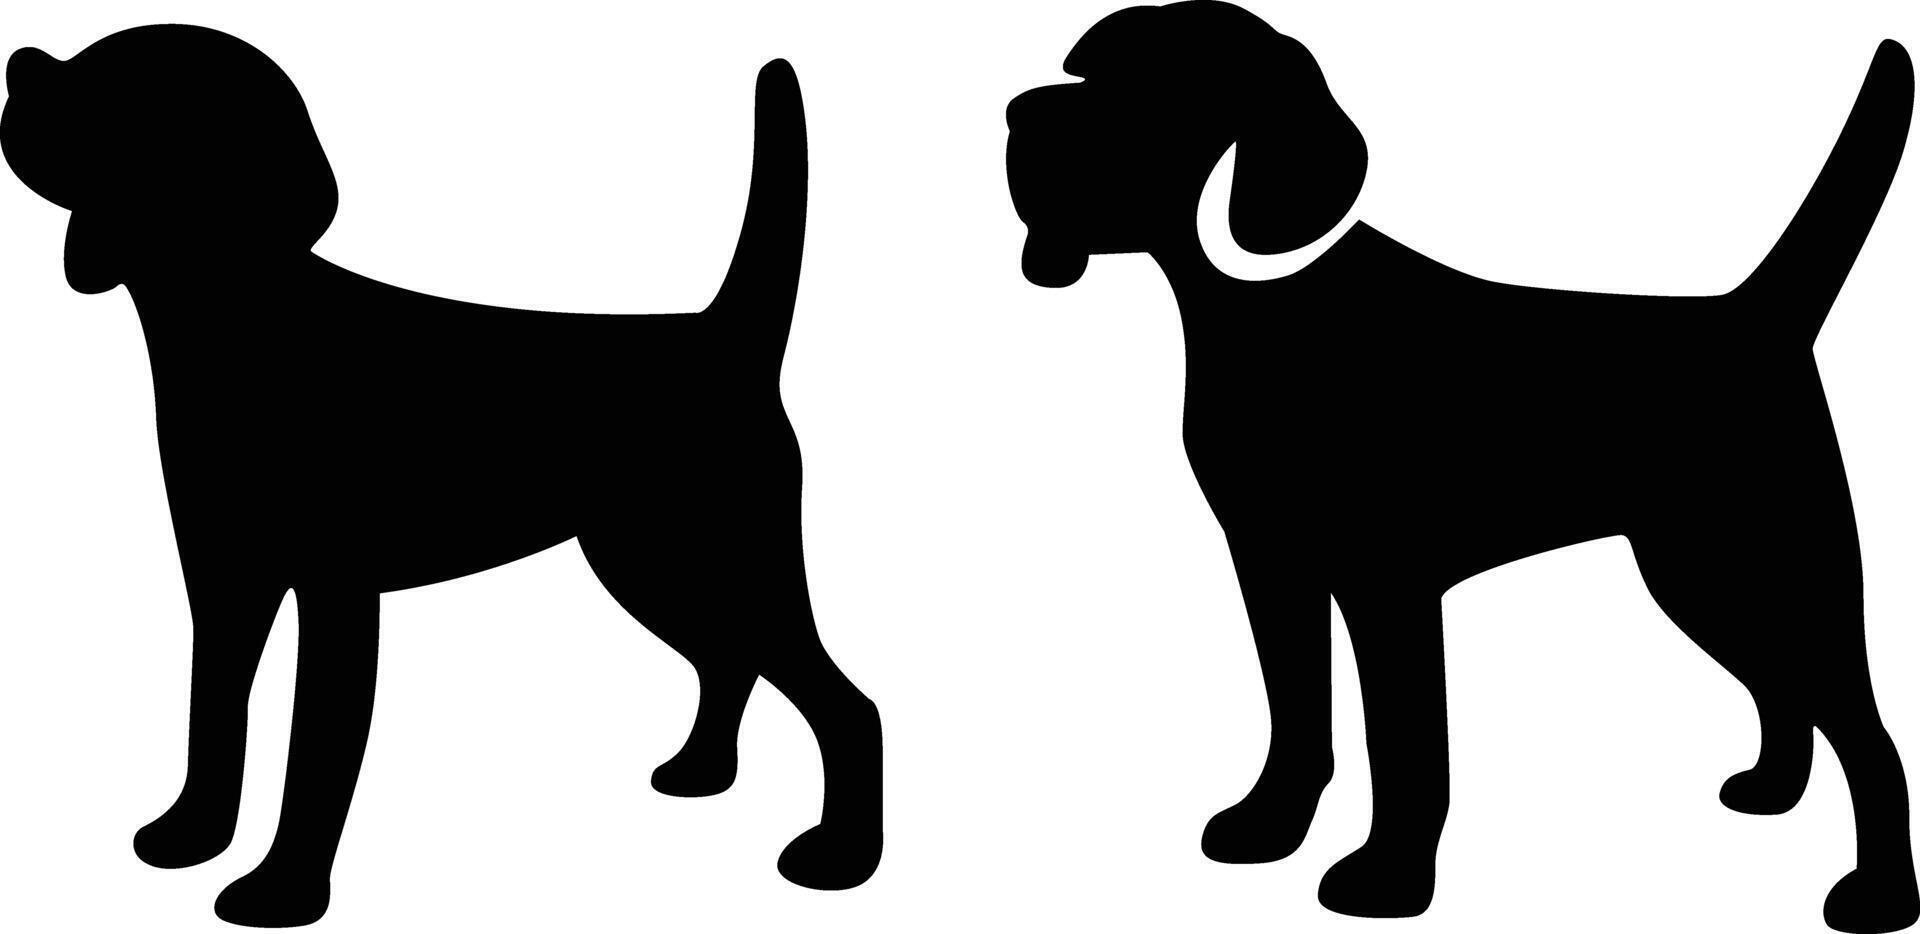 beagle chien silhouette vecteur